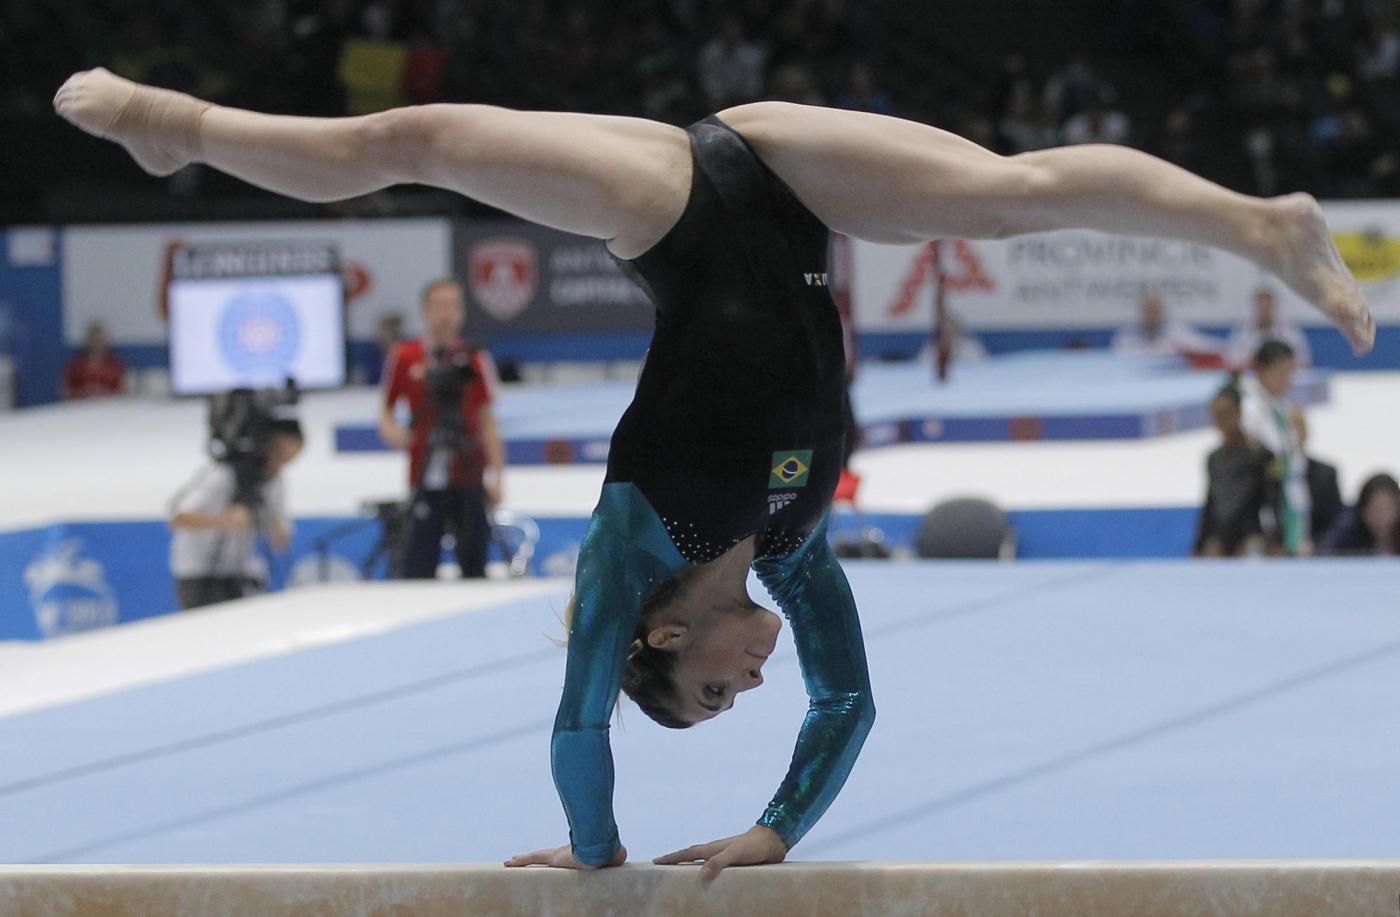 La brasiliana Daniele Matias Hypolito ai Campionati mondiali di ginnastica artistica 2013 ad Anversa